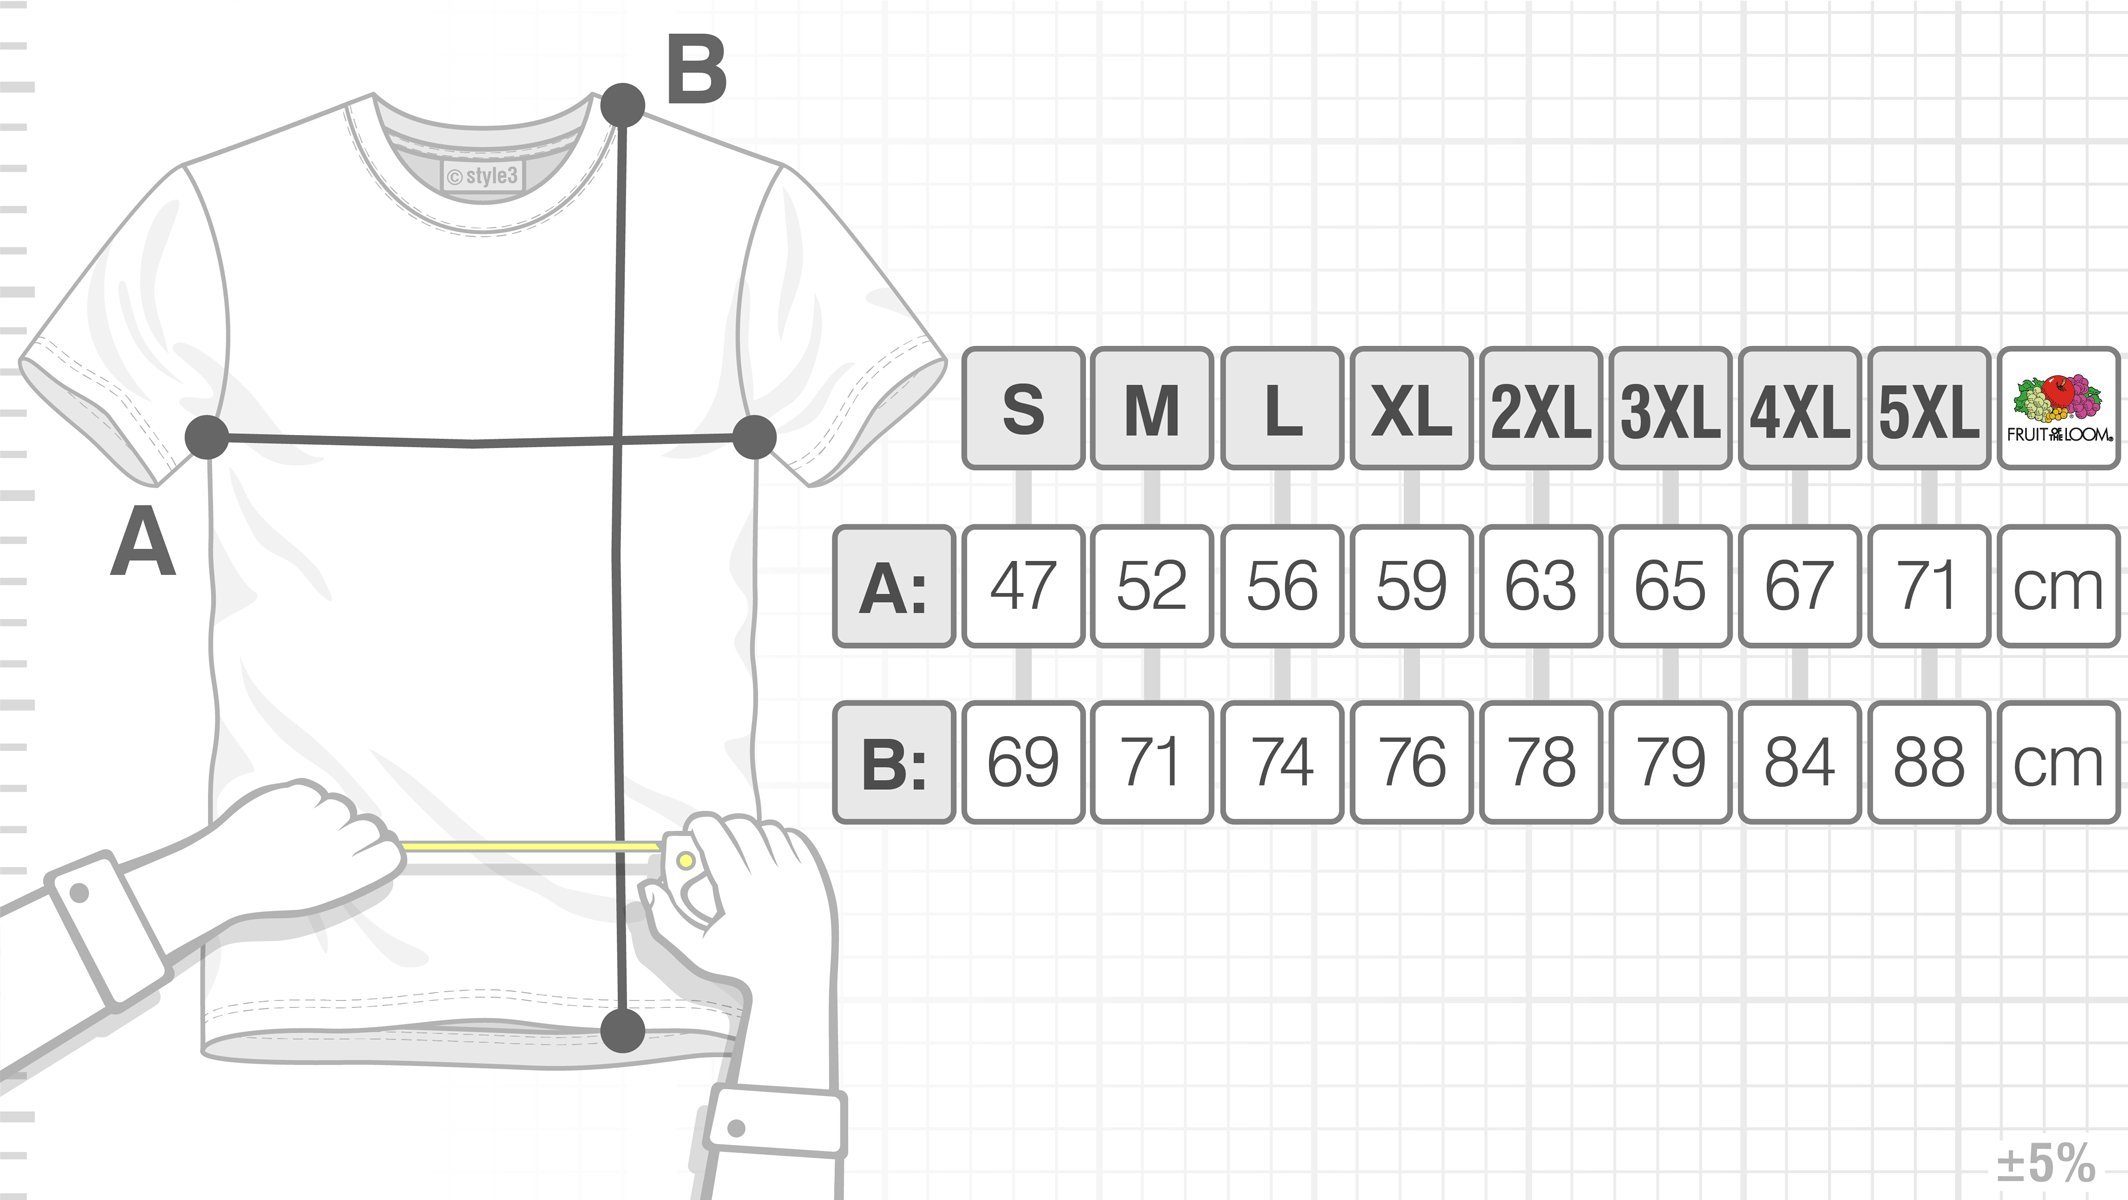 Herren 8-Bit Link classic T-Shirt retro style3 Print-Shirt gamer